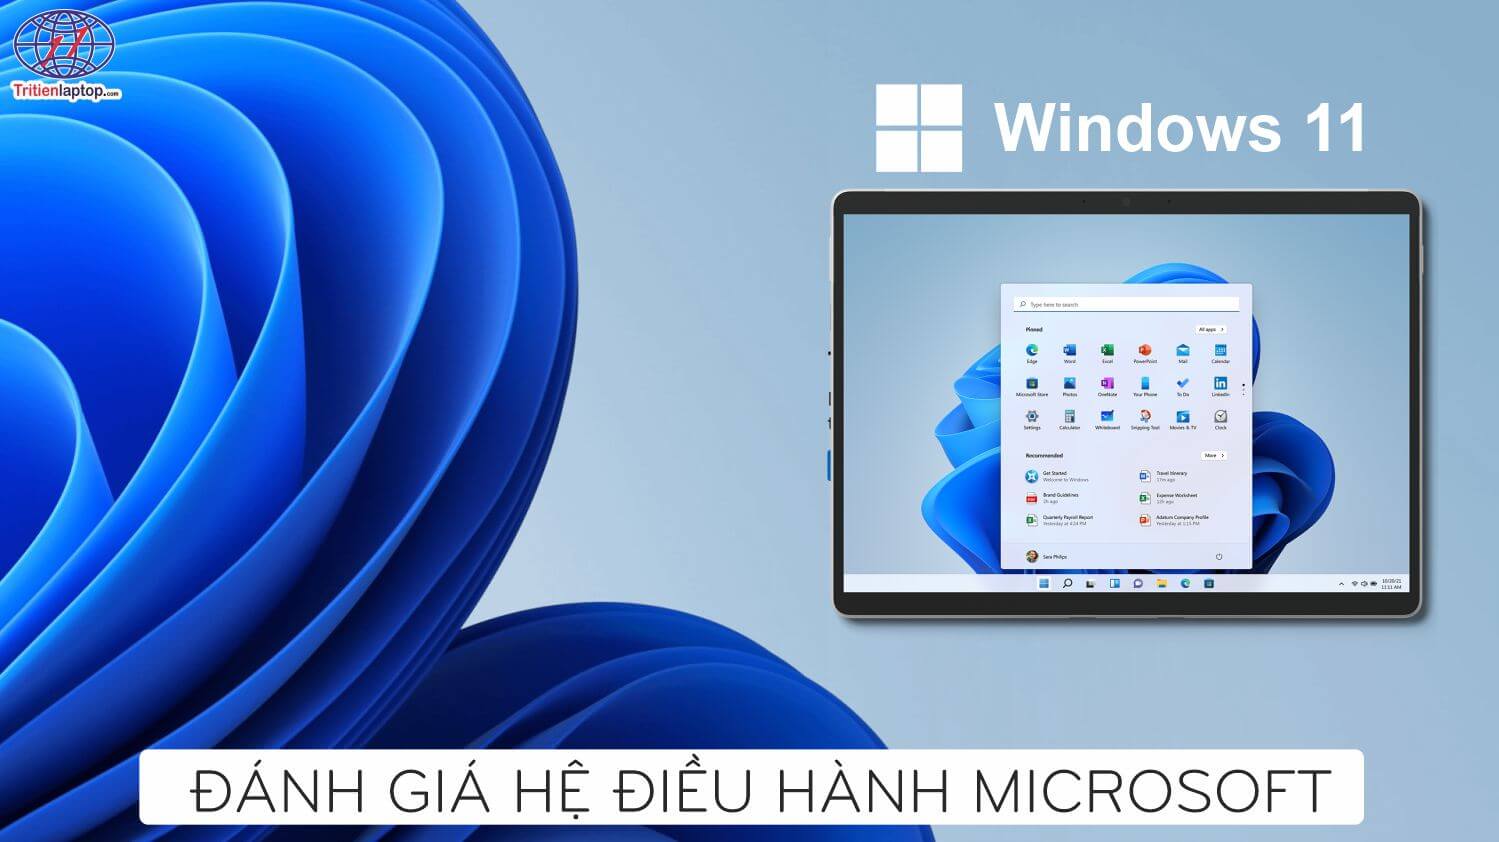 Đánh giá hệ điều hành Microsoft Windows 11